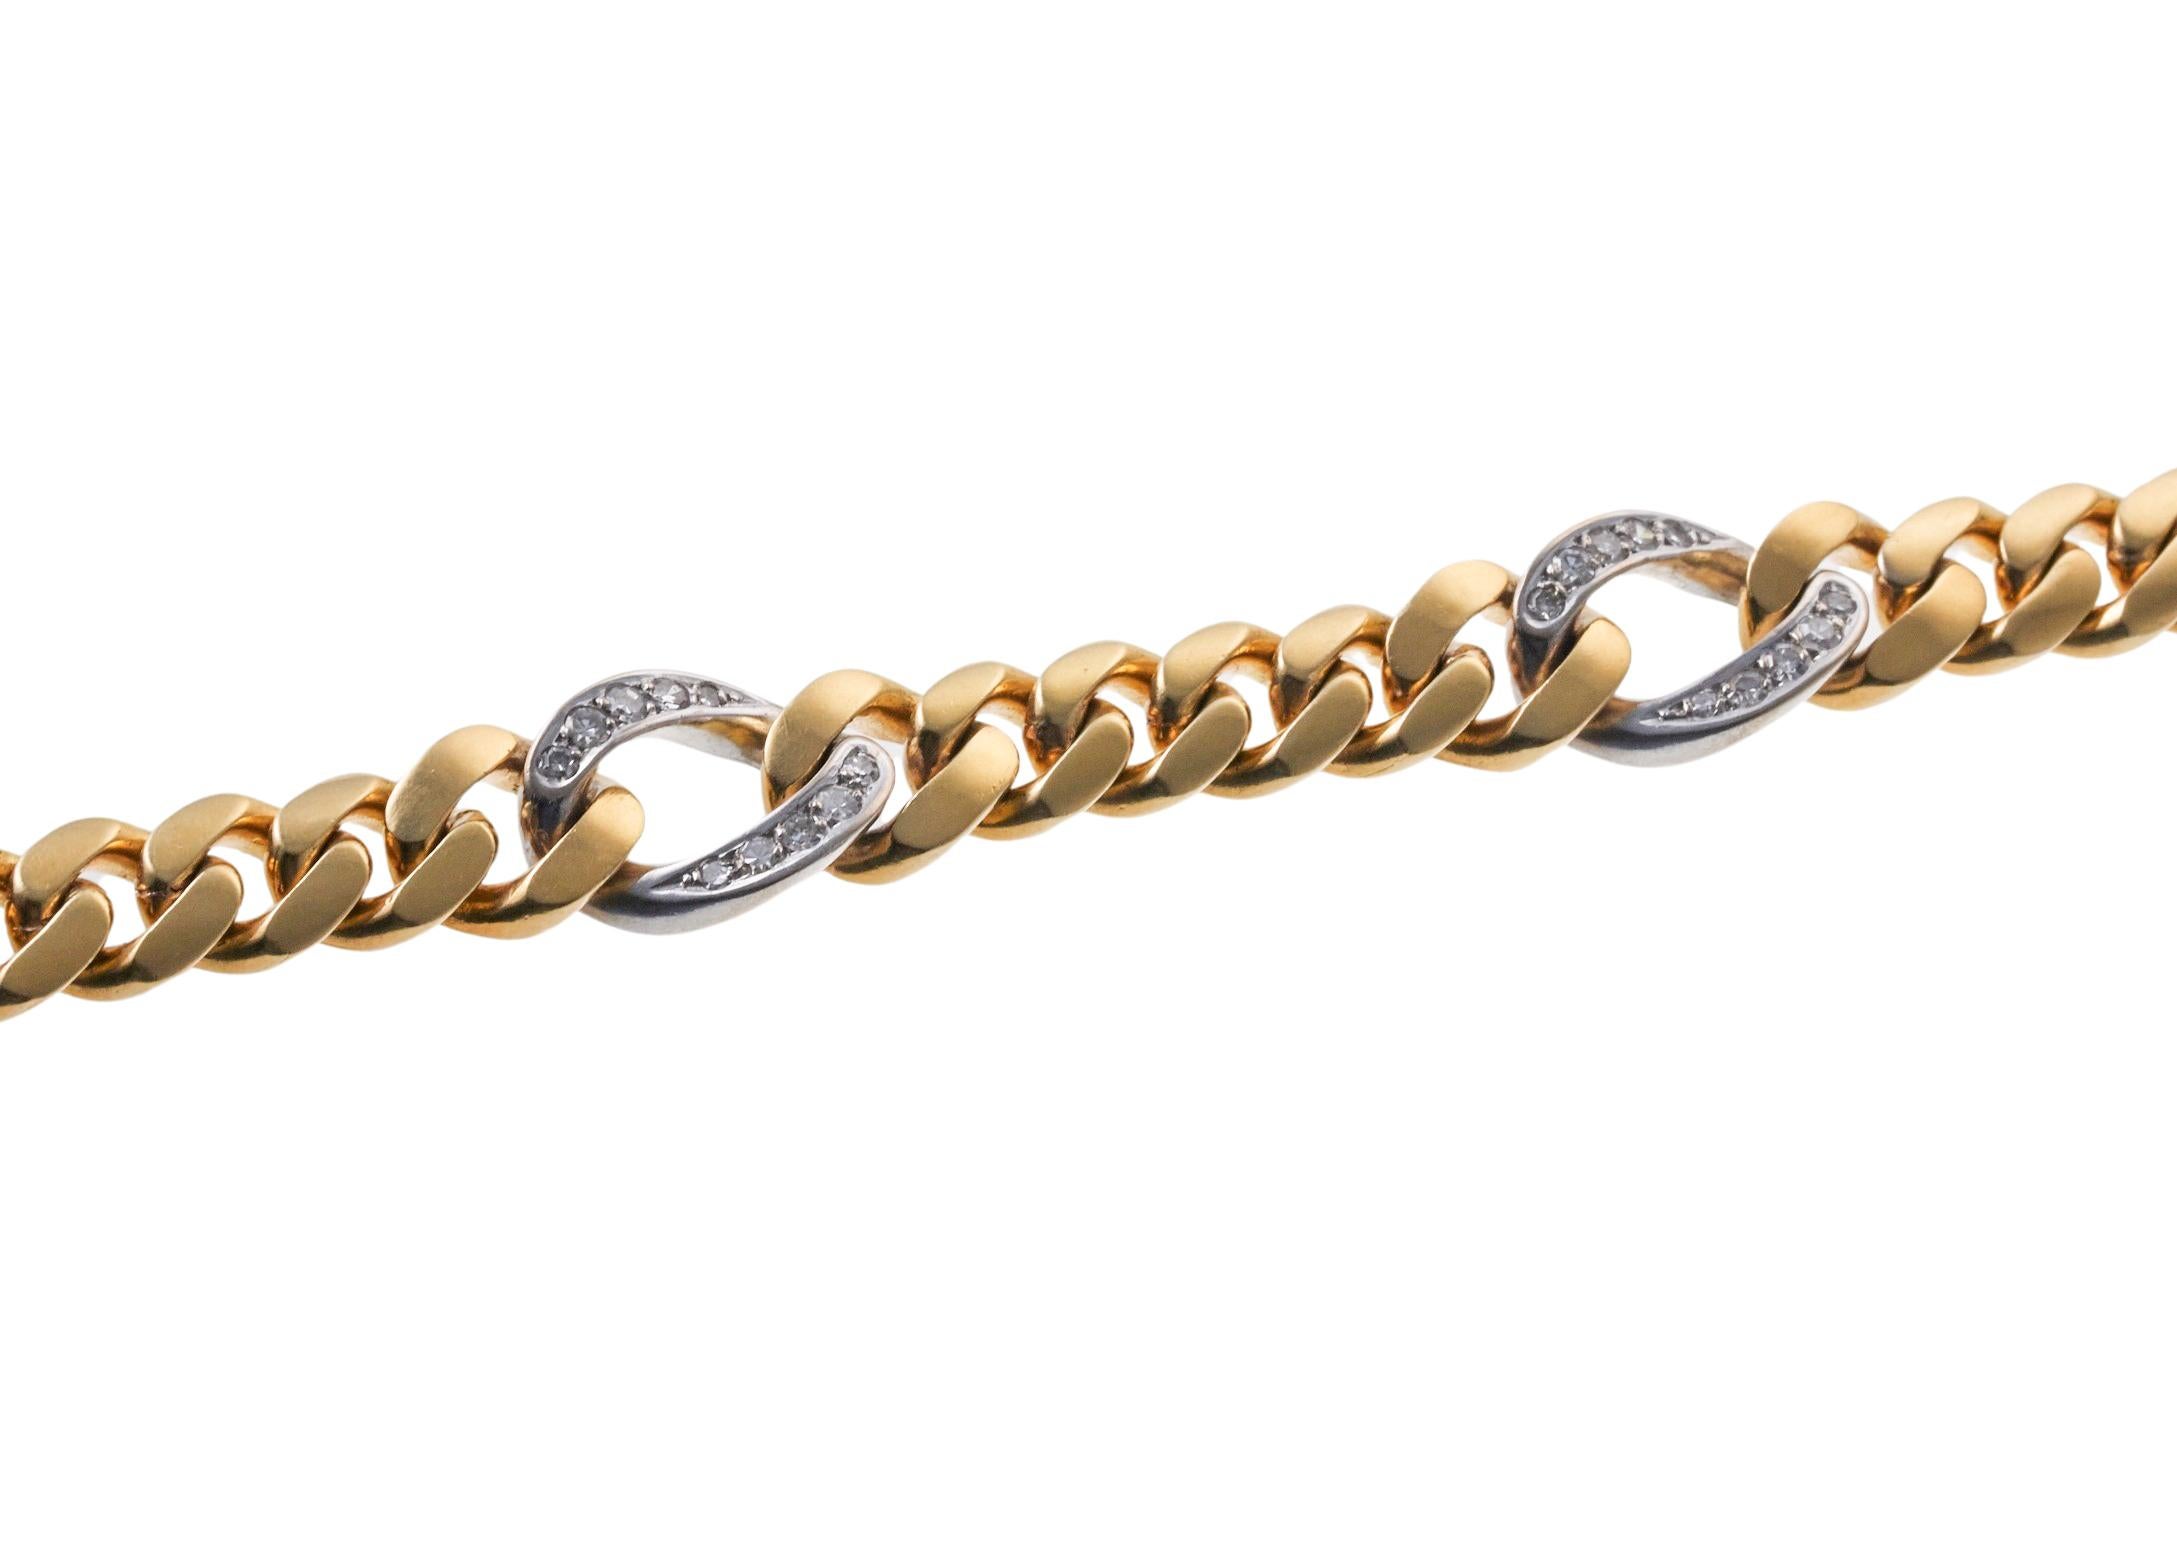 Bracelet continental en or 18 carats, deux tons d'or, serti de quatre maillons de diamants - total env. 0,40ctw, pierres de taille unique. Le bracelet mesure 7 1/8